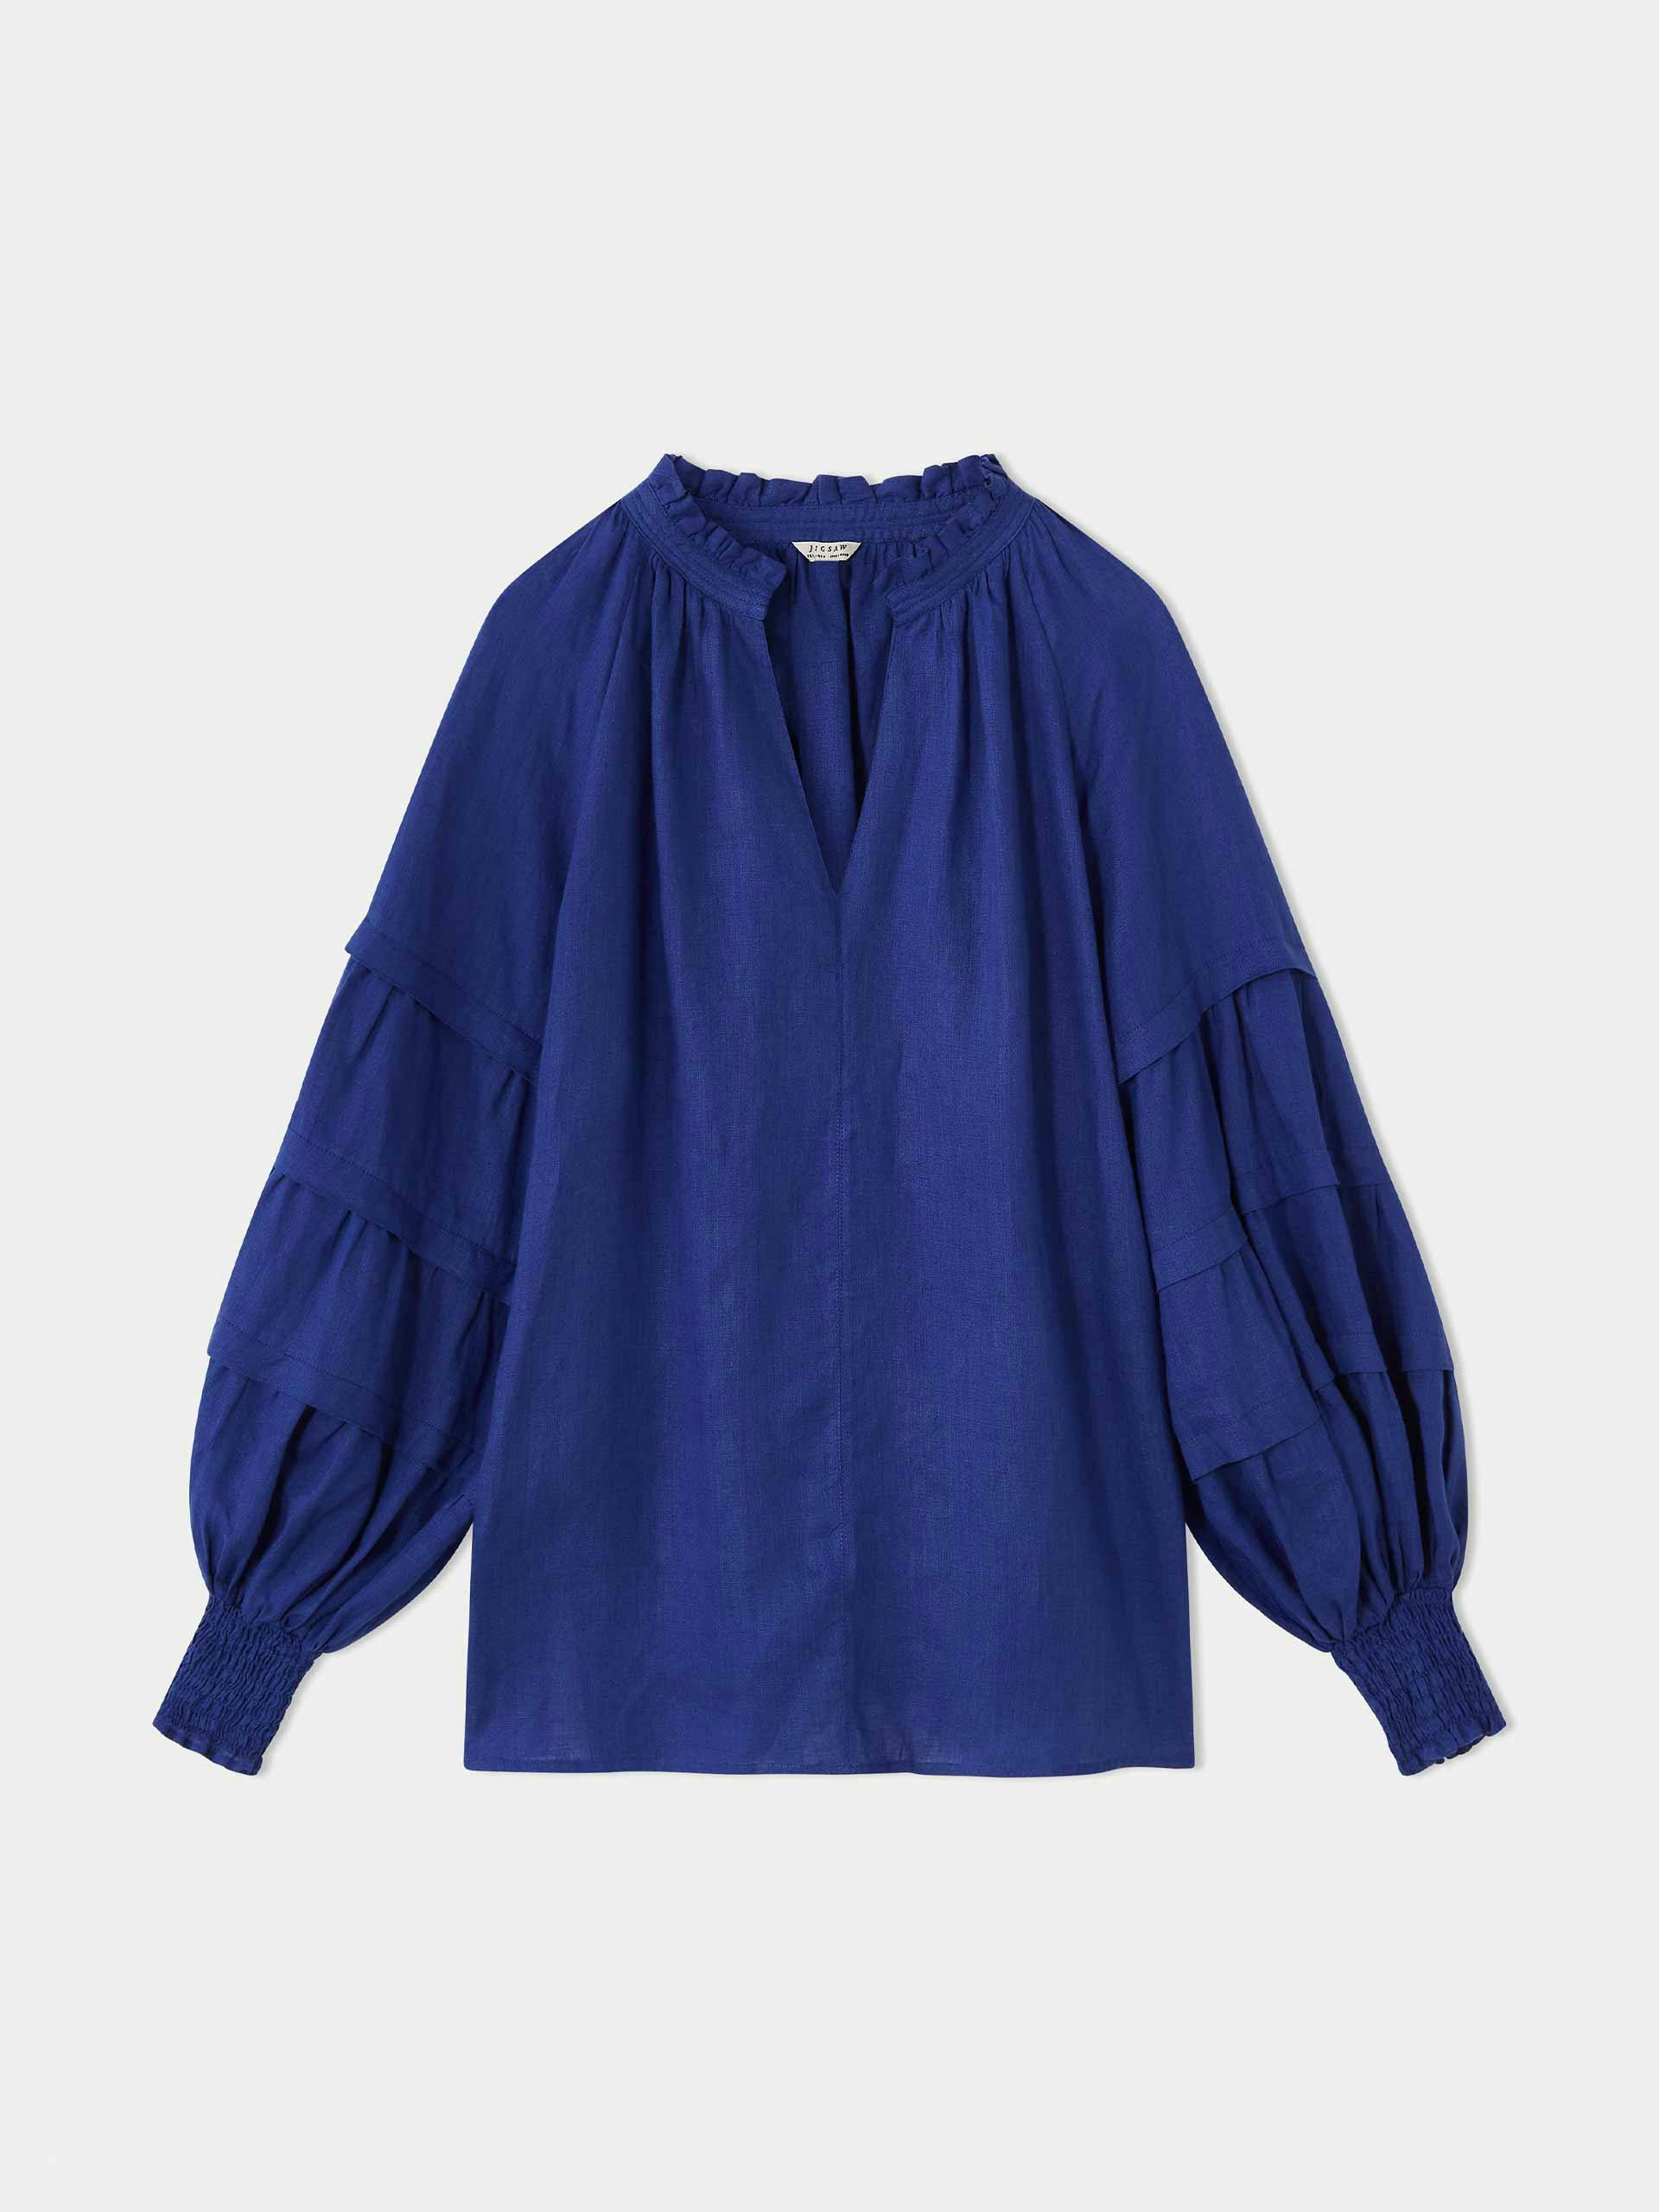 Blue linen blouse